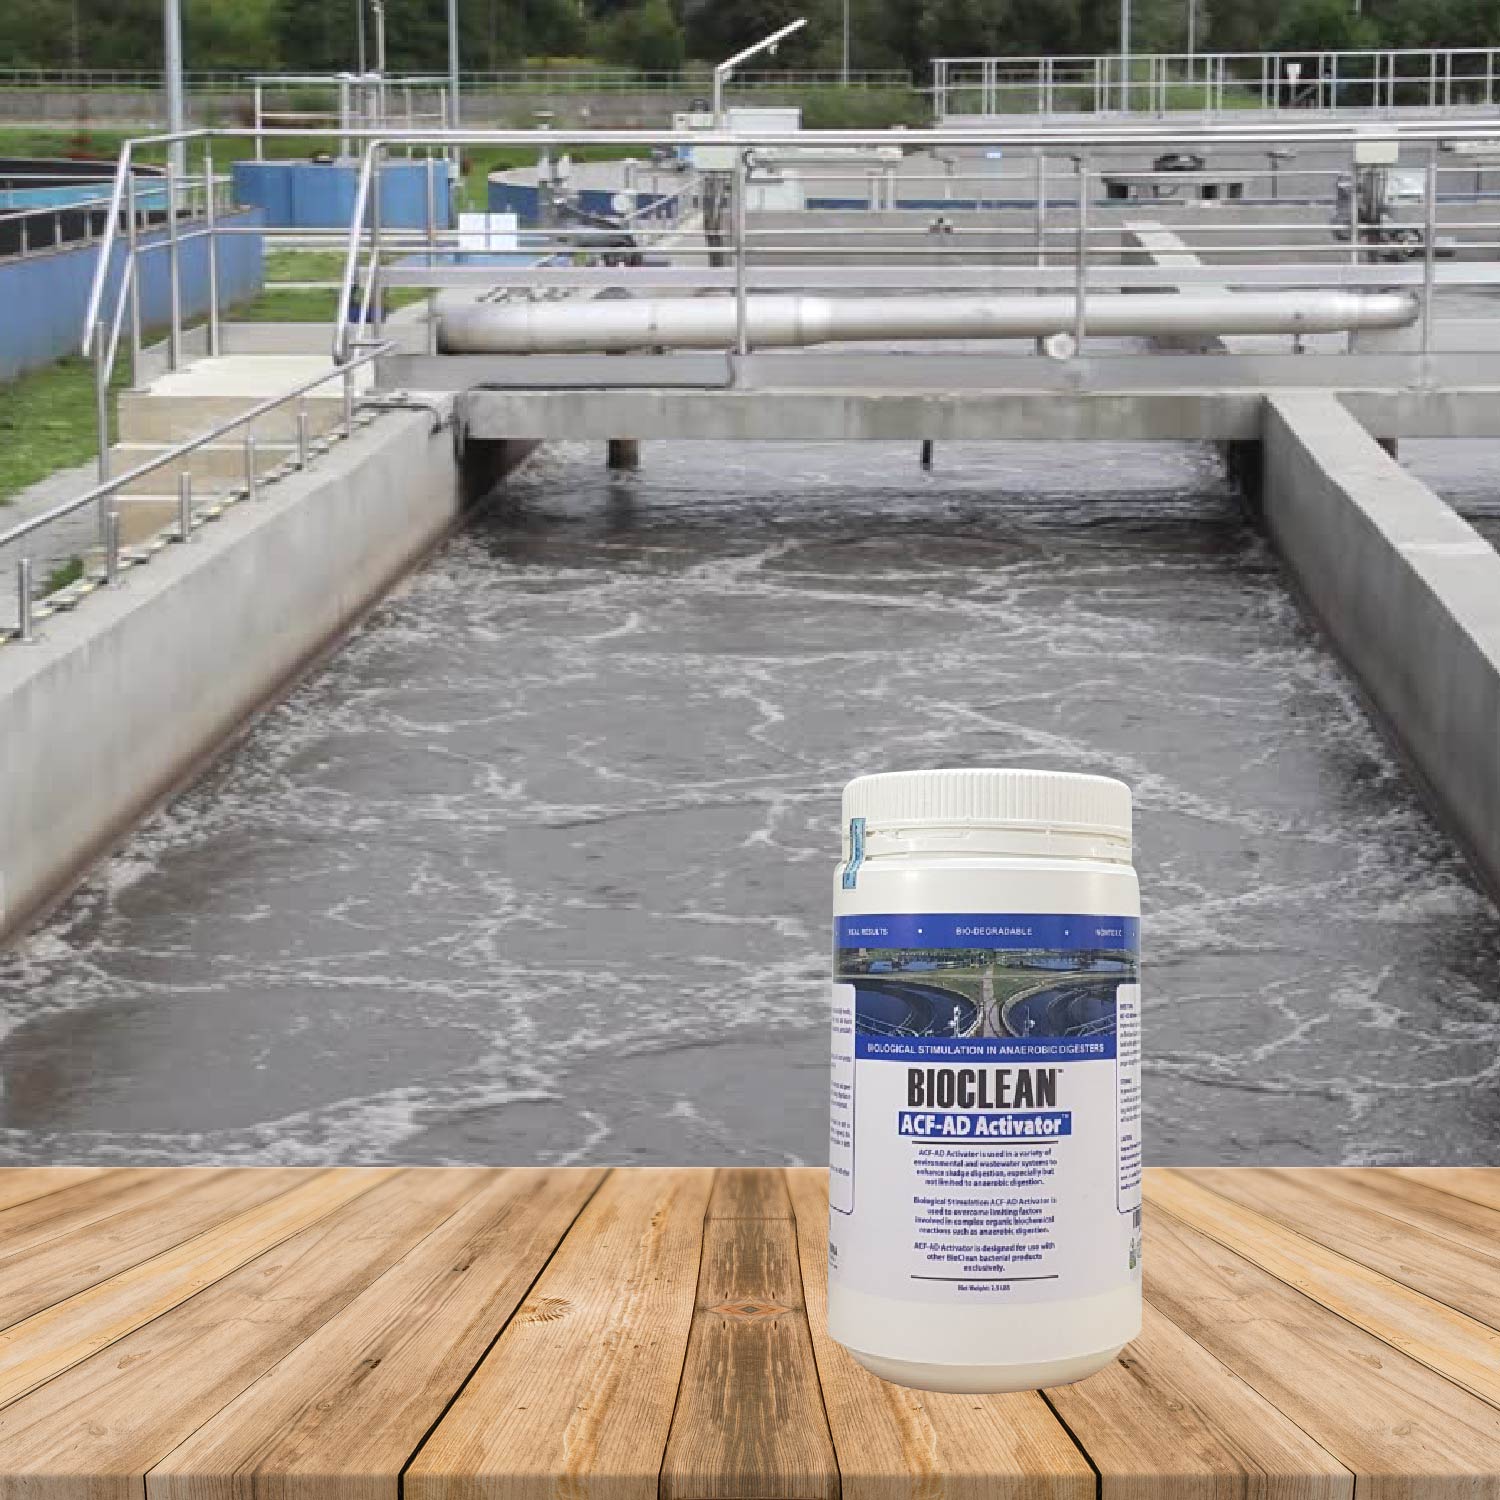 Vi sinh phân hủy kỵ khí trong nước thải Bioclean ACF AD Activator hàng Mỹ NSX Sun &amp; Earth Microbiology - Chai 2,5 lbs = 1,13 kg